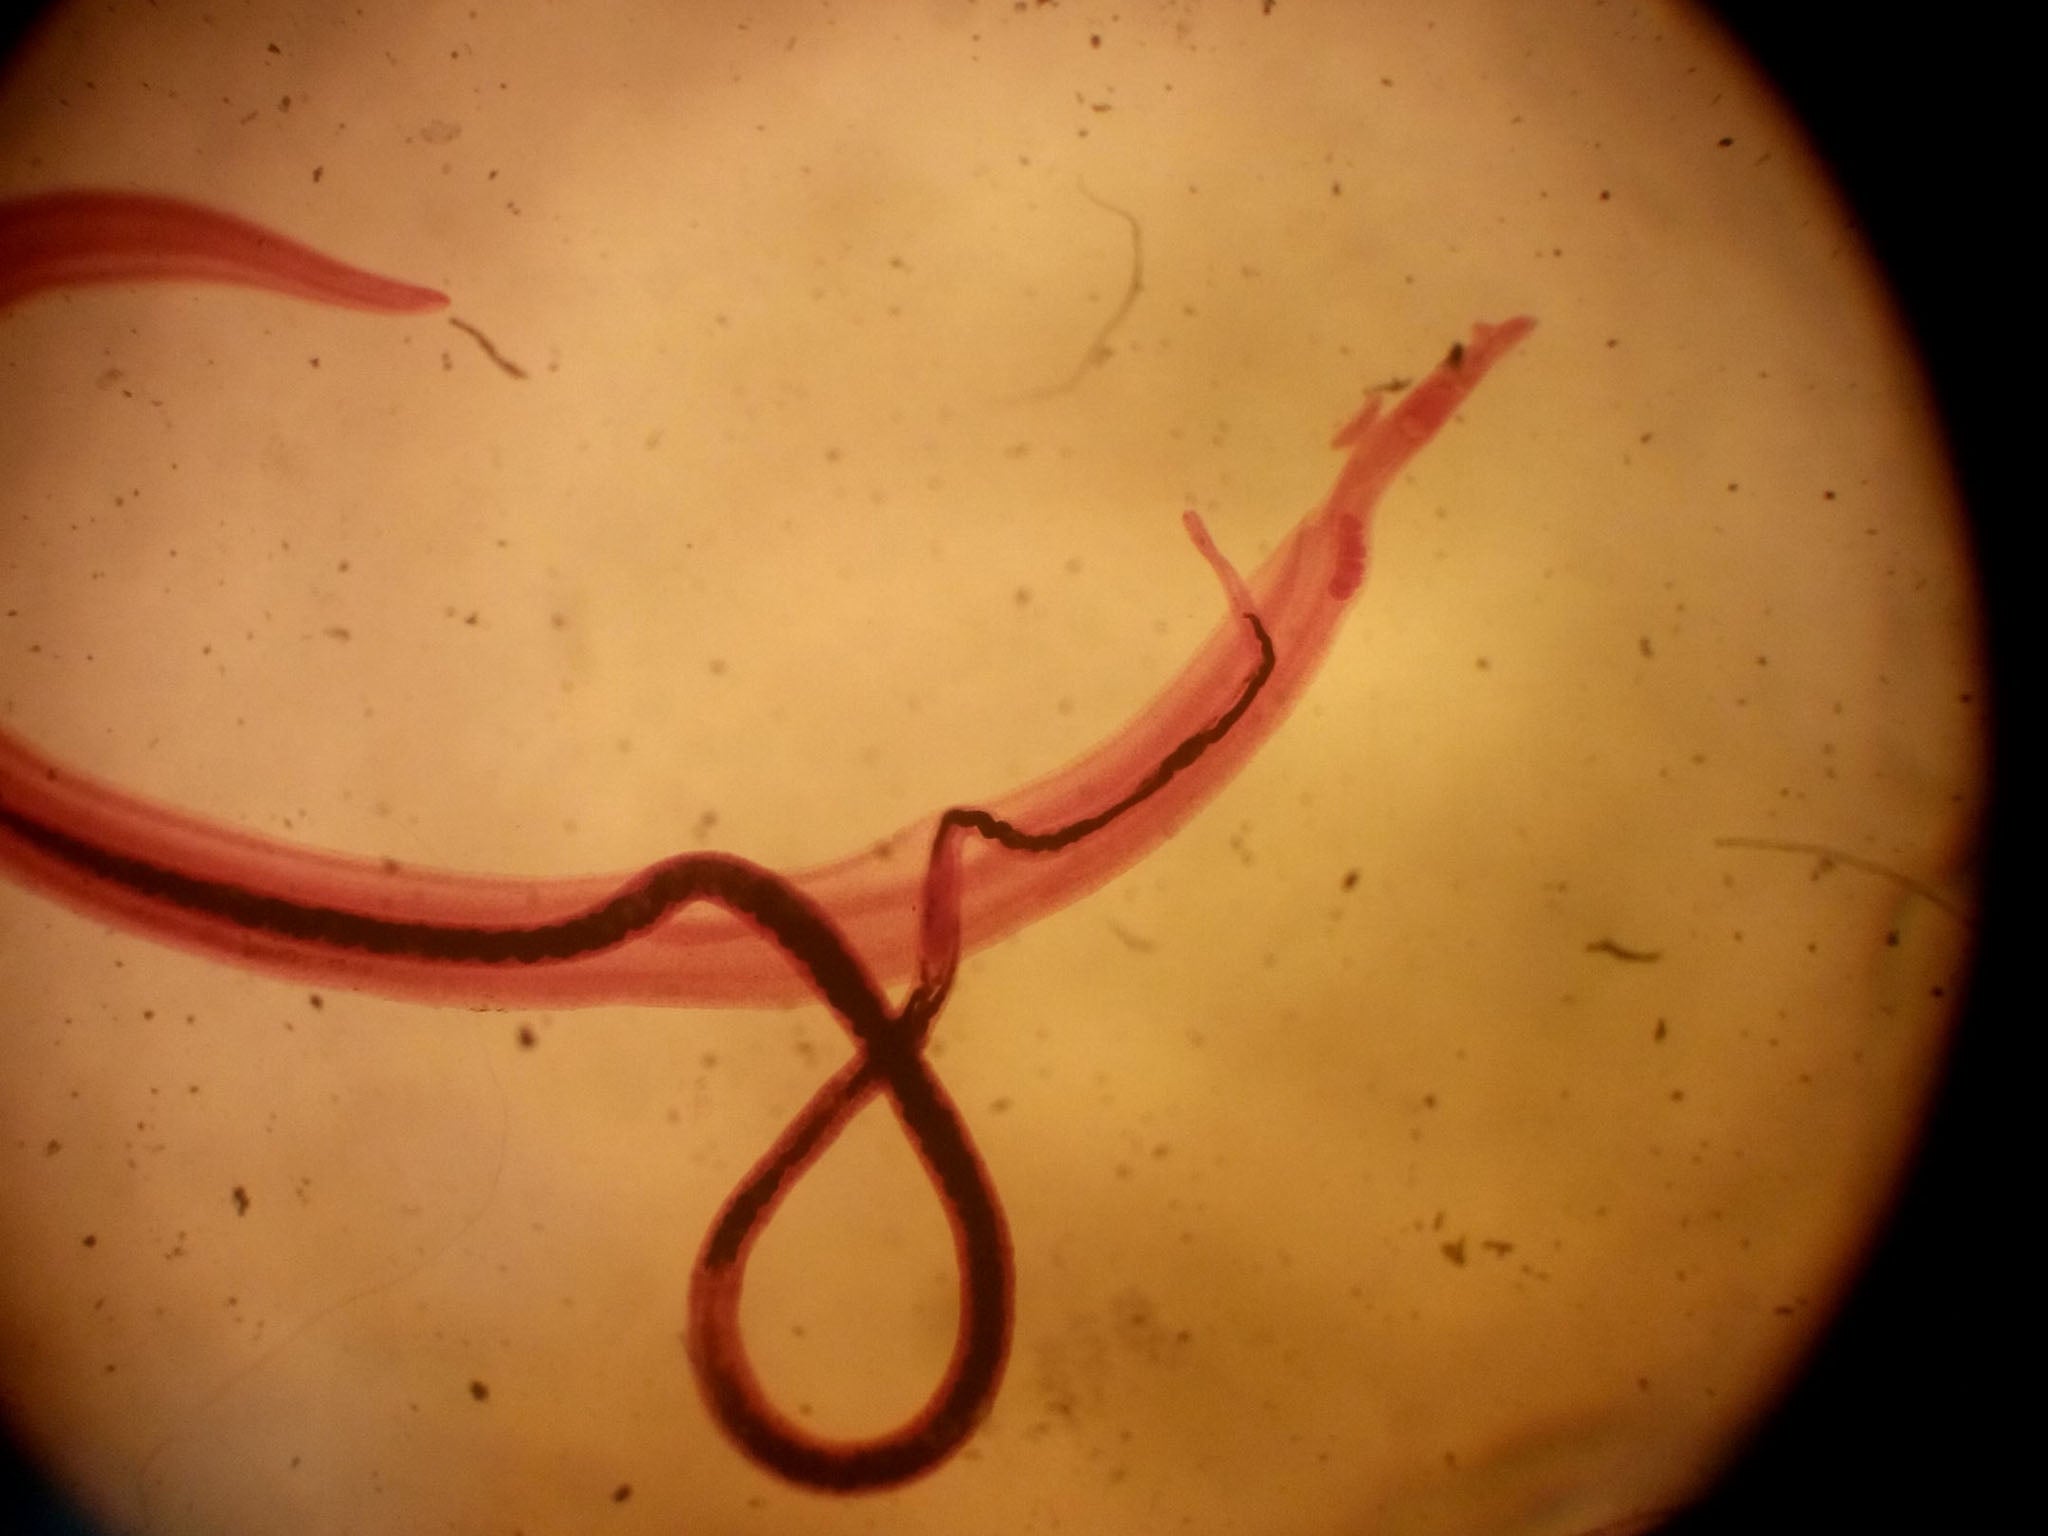 A pair of schistosoma mansoni parasites